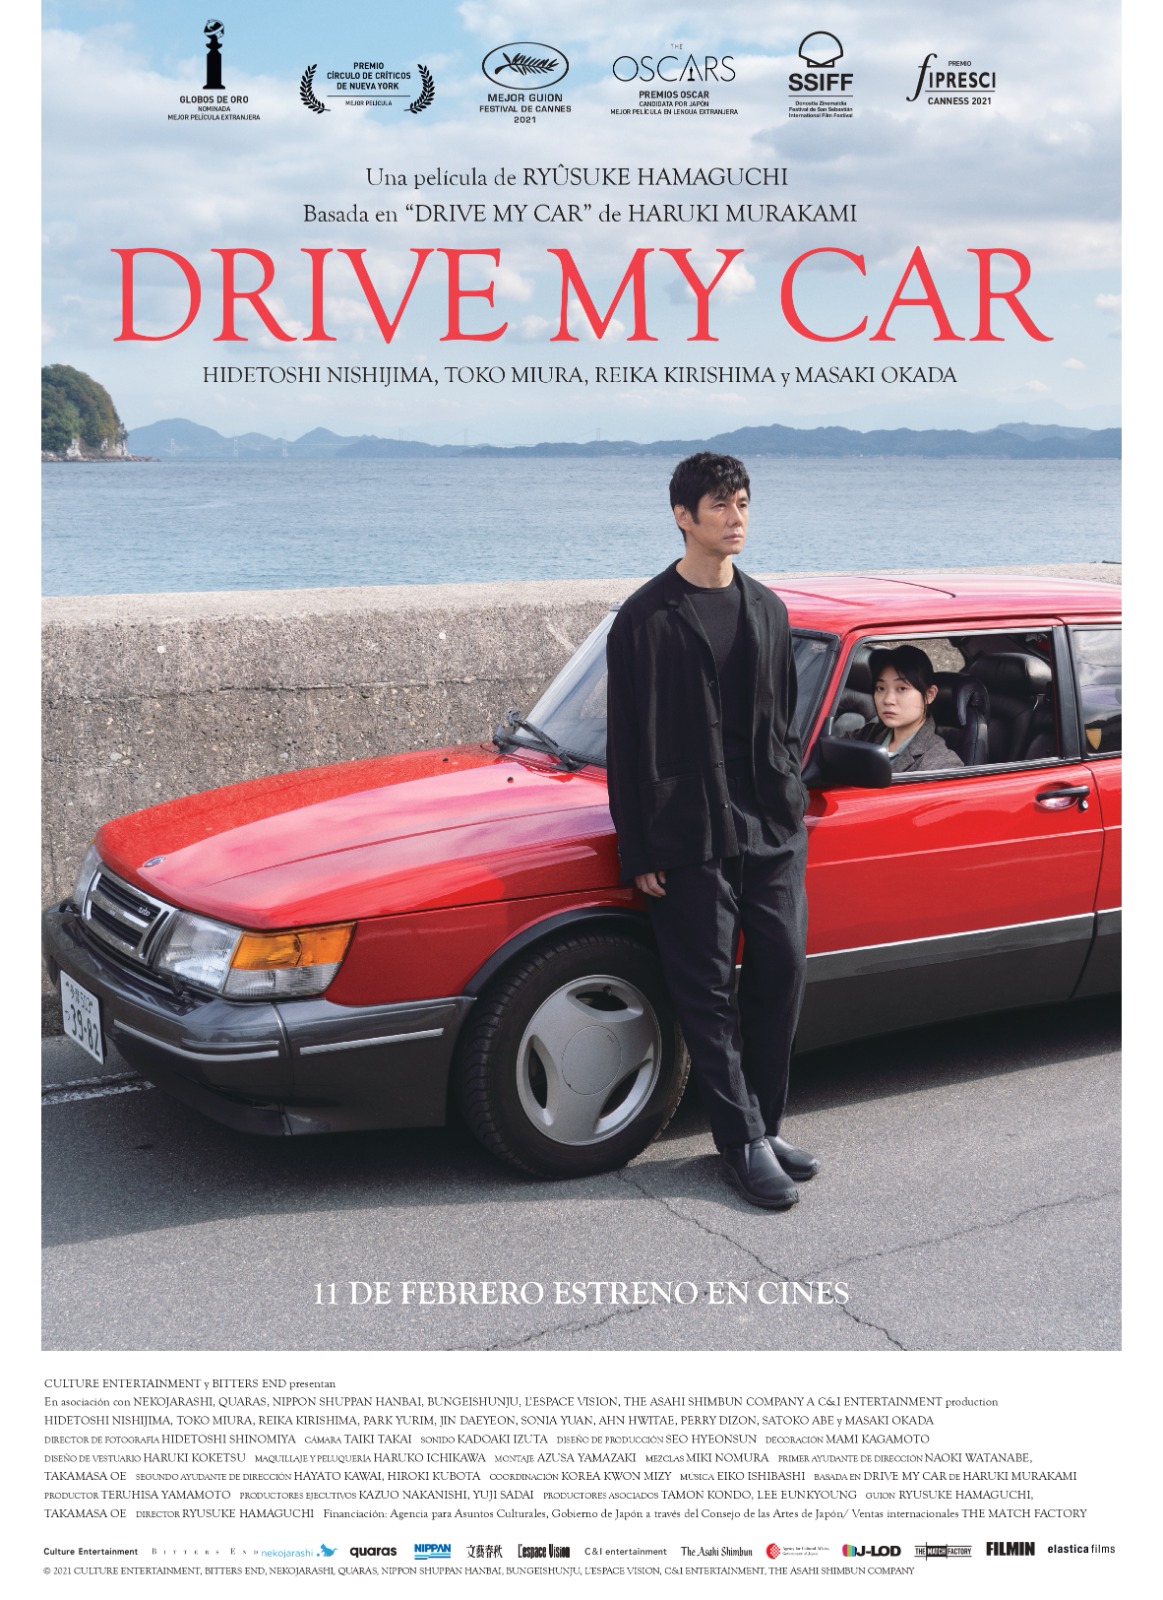 'Drive my car', de Ryusuke Hamaguchi, se estrenará en cines el 11 de febrero